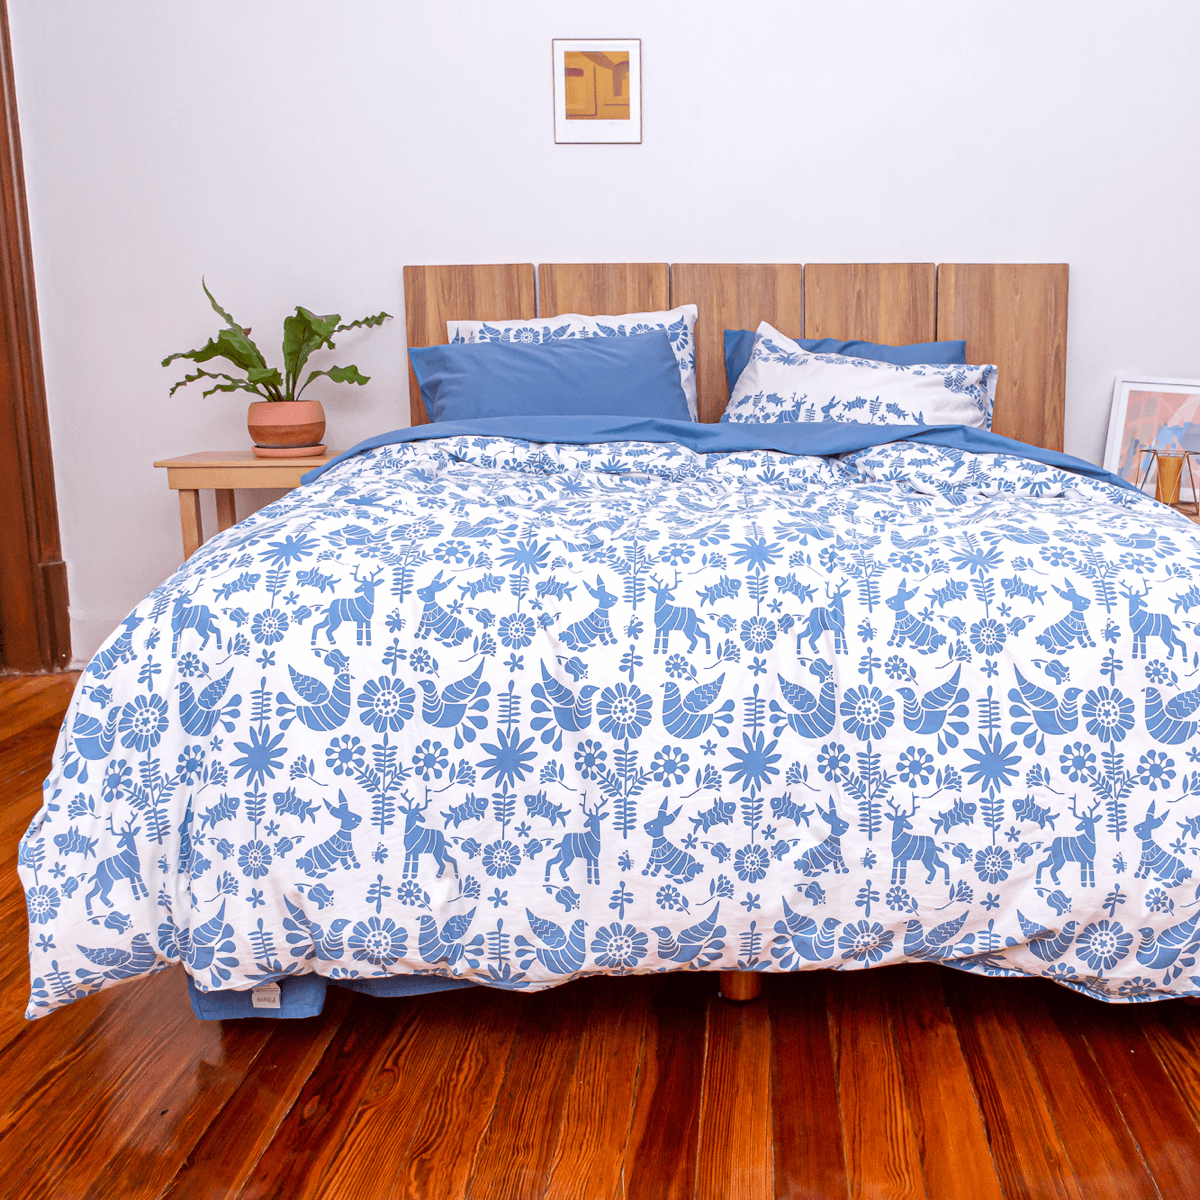 cama con juego completo de sabanas azul nuit y funda de duvet animalitos azul nuit 